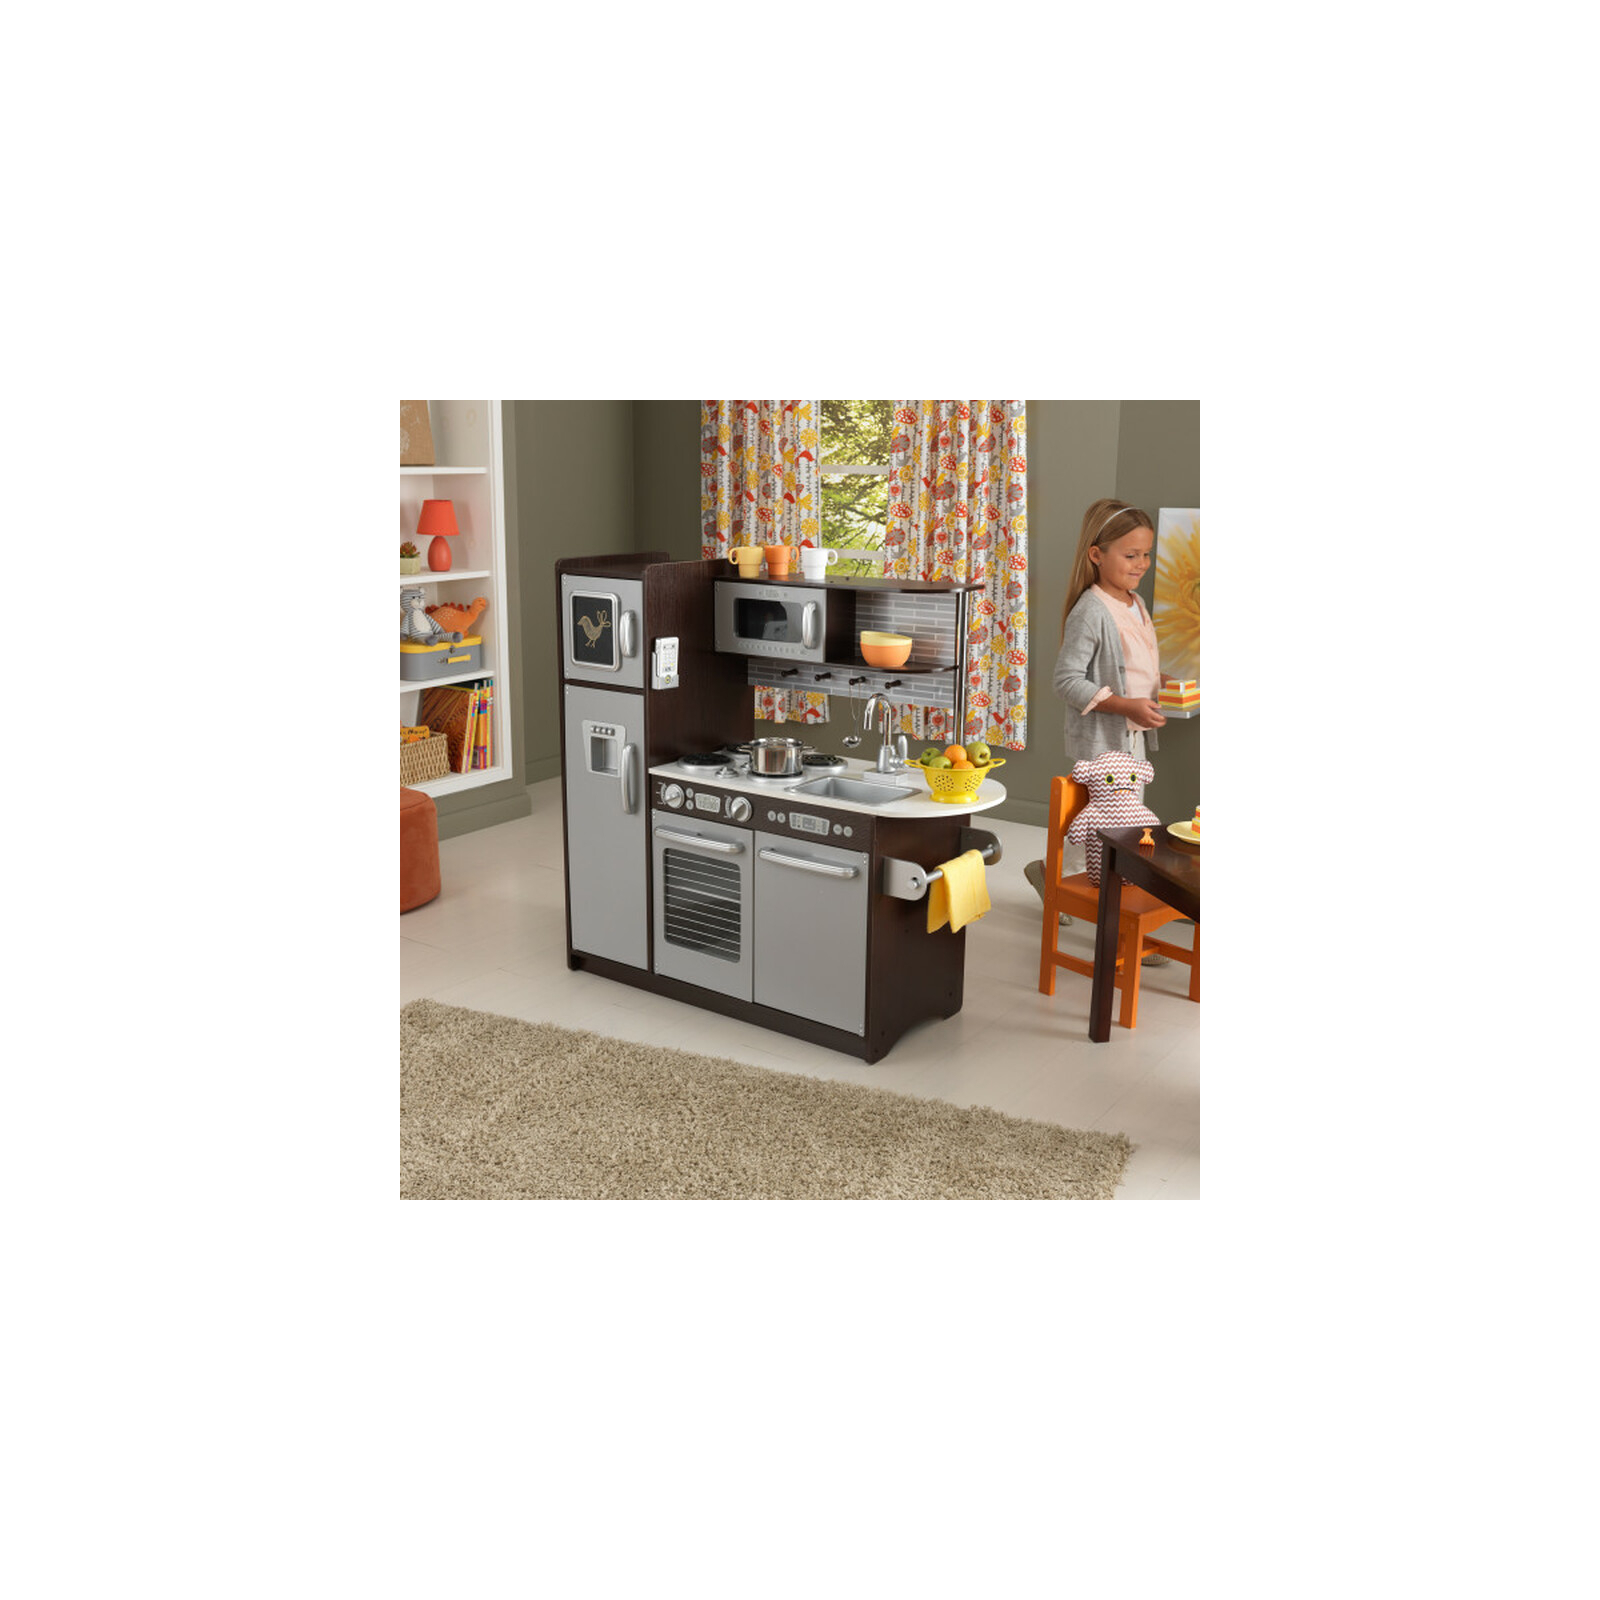 Игровой набор KidKraft Детская кухня Espresso (53260) изображение 2